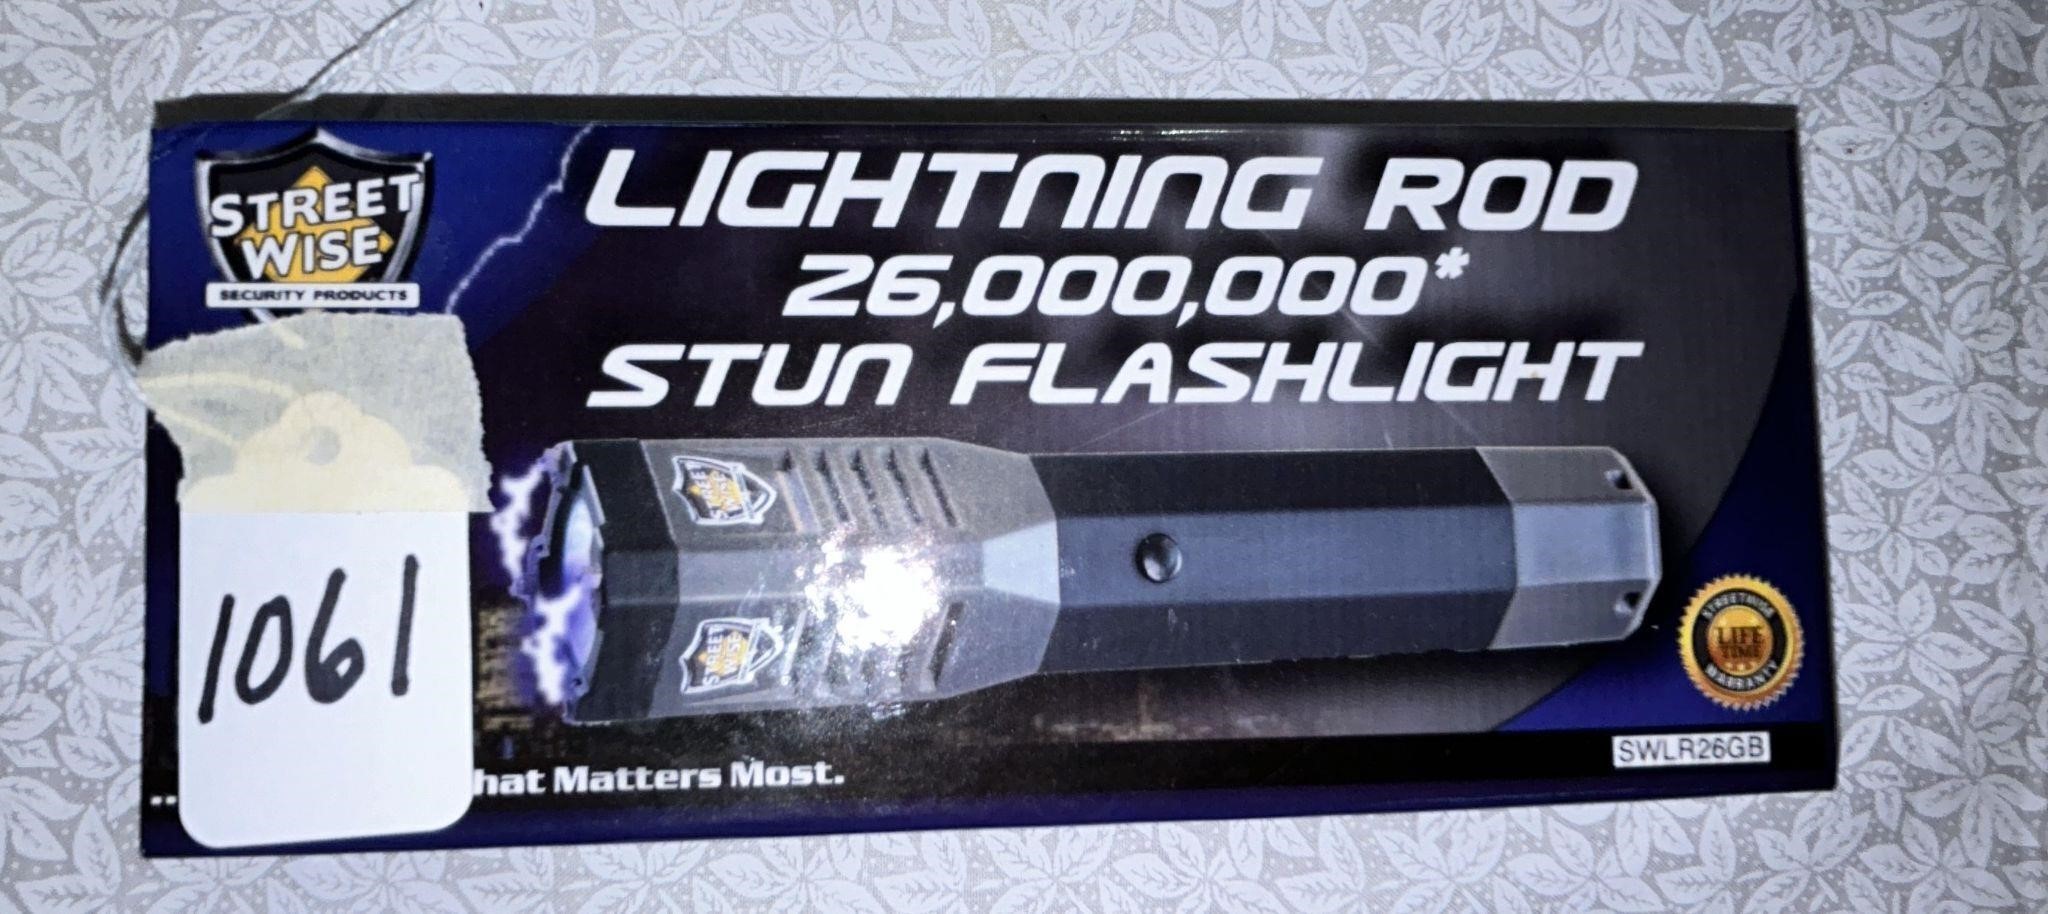 Lightening Rod 26million stun flashlight